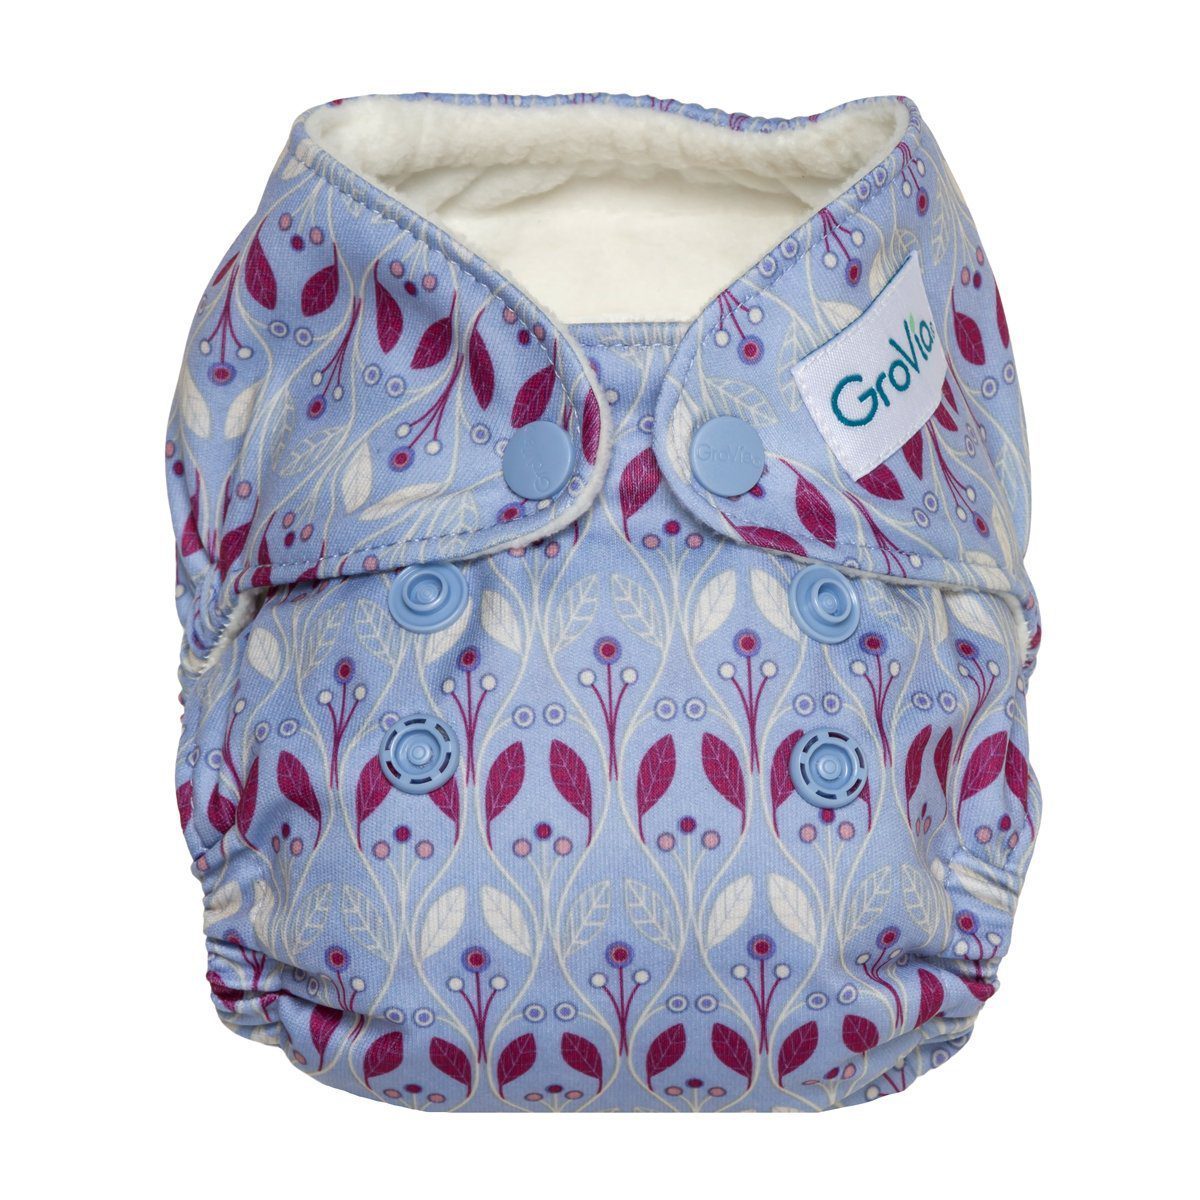 GroVia Newborn All in One | The Cloth Nappy Company